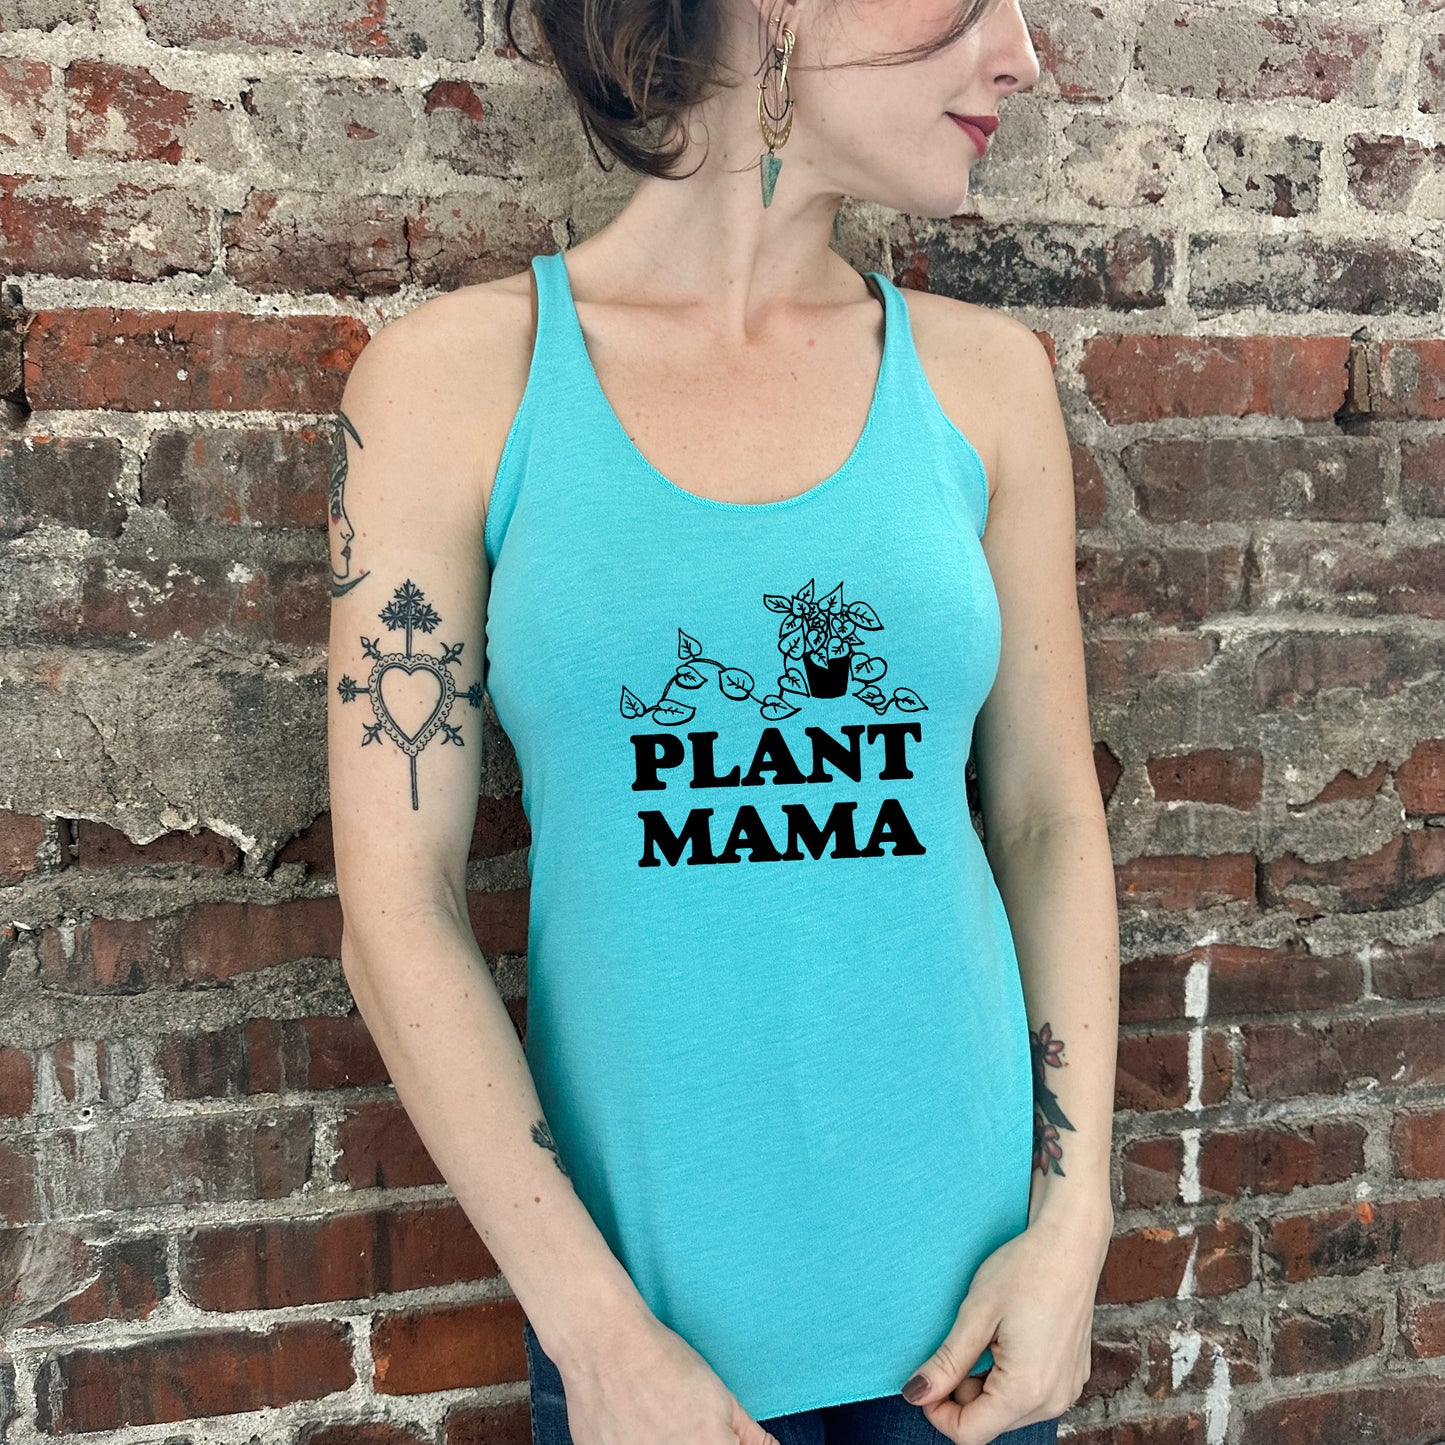 Plant Mama - Women's Tank - Heather Gray, Tahiti, or Envy